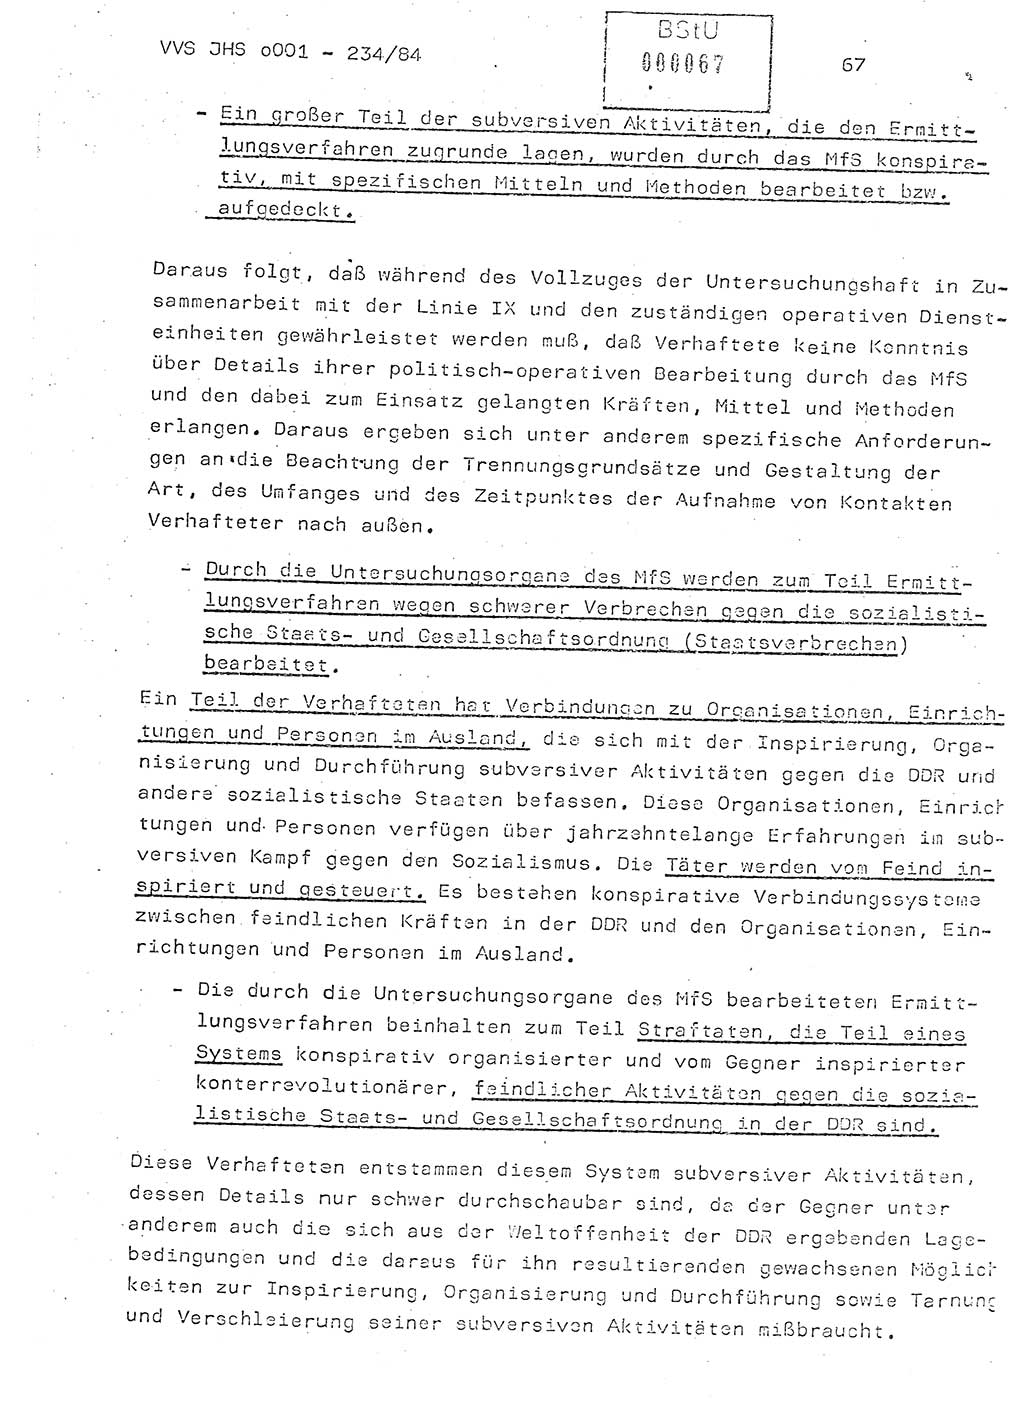 Dissertation Oberst Siegfried Rataizick (Abt. ⅩⅣ), Oberstleutnant Volkmar Heinz (Abt. ⅩⅣ), Oberstleutnant Werner Stein (HA Ⅸ), Hauptmann Heinz Conrad (JHS), Ministerium für Staatssicherheit (MfS) [Deutsche Demokratische Republik (DDR)], Juristische Hochschule (JHS), Vertrauliche Verschlußsache (VVS) o001-234/84, Potsdam 1984, Seite 67 (Diss. MfS DDR JHS VVS o001-234/84 1984, S. 67)